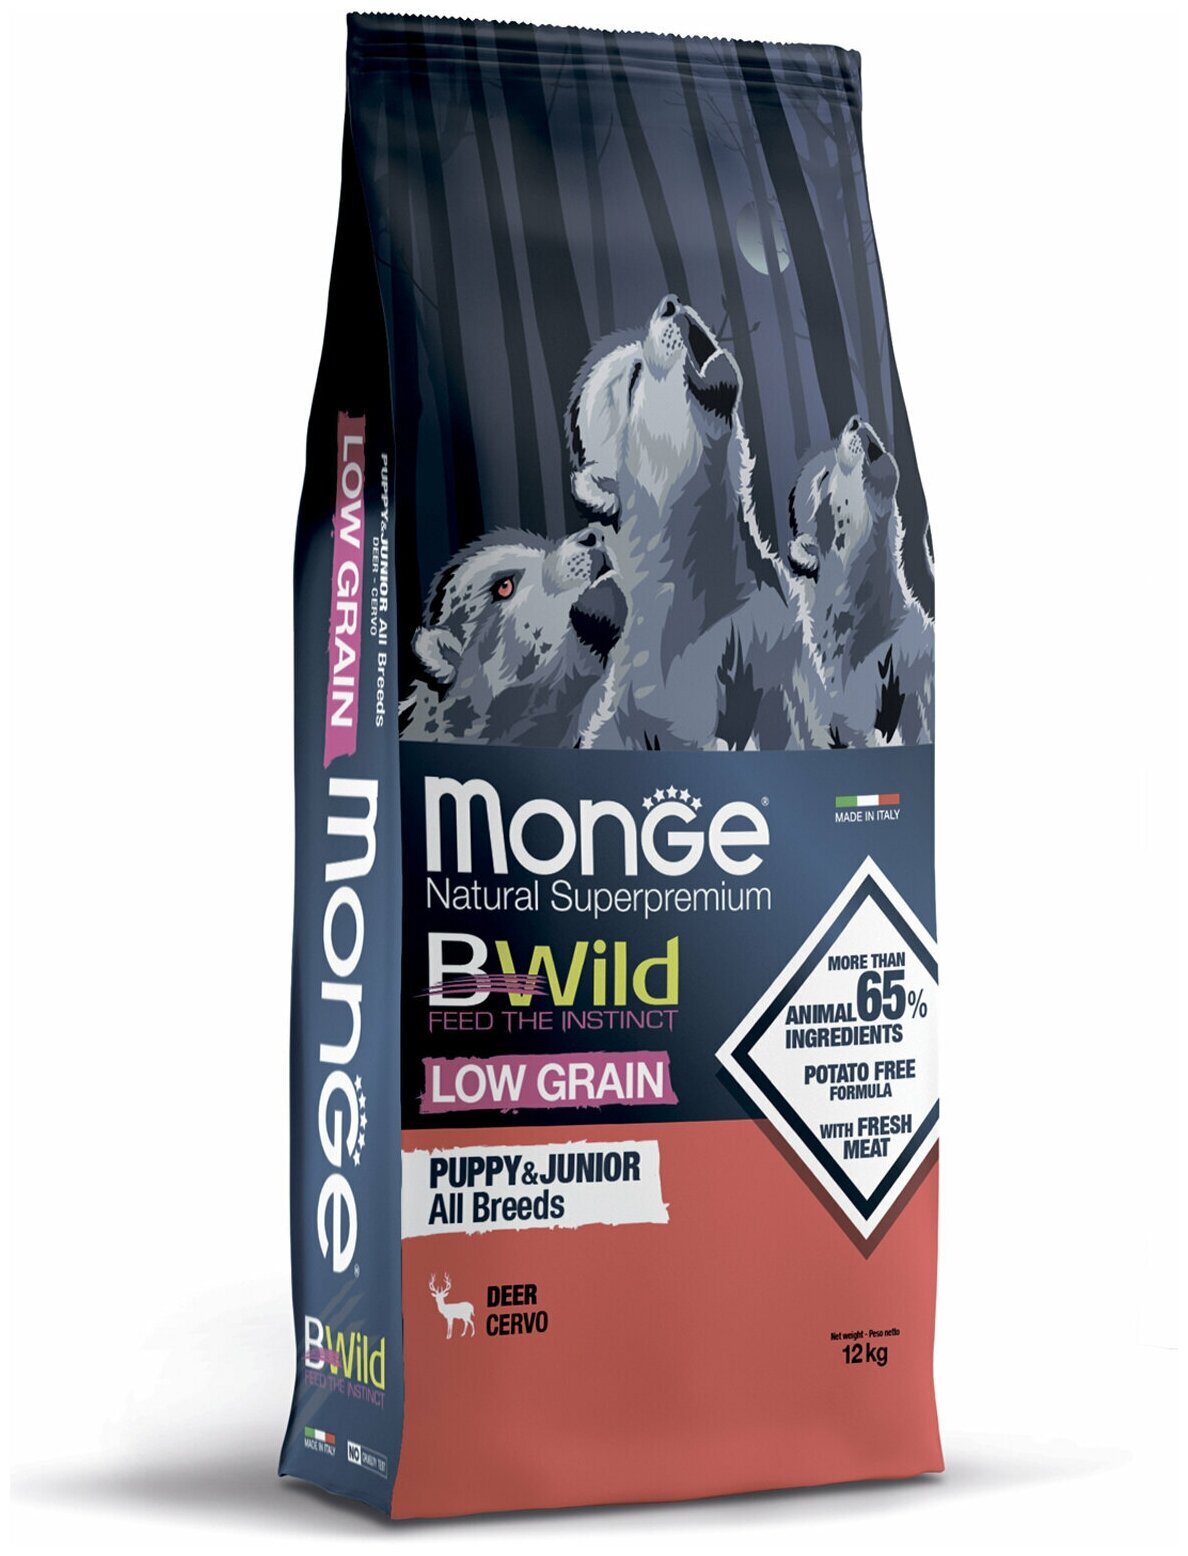 Monge Dog BWild Low Grain Puppy & junior низкозерновой корм из мяса оленя для щенков всех пород 12 кг